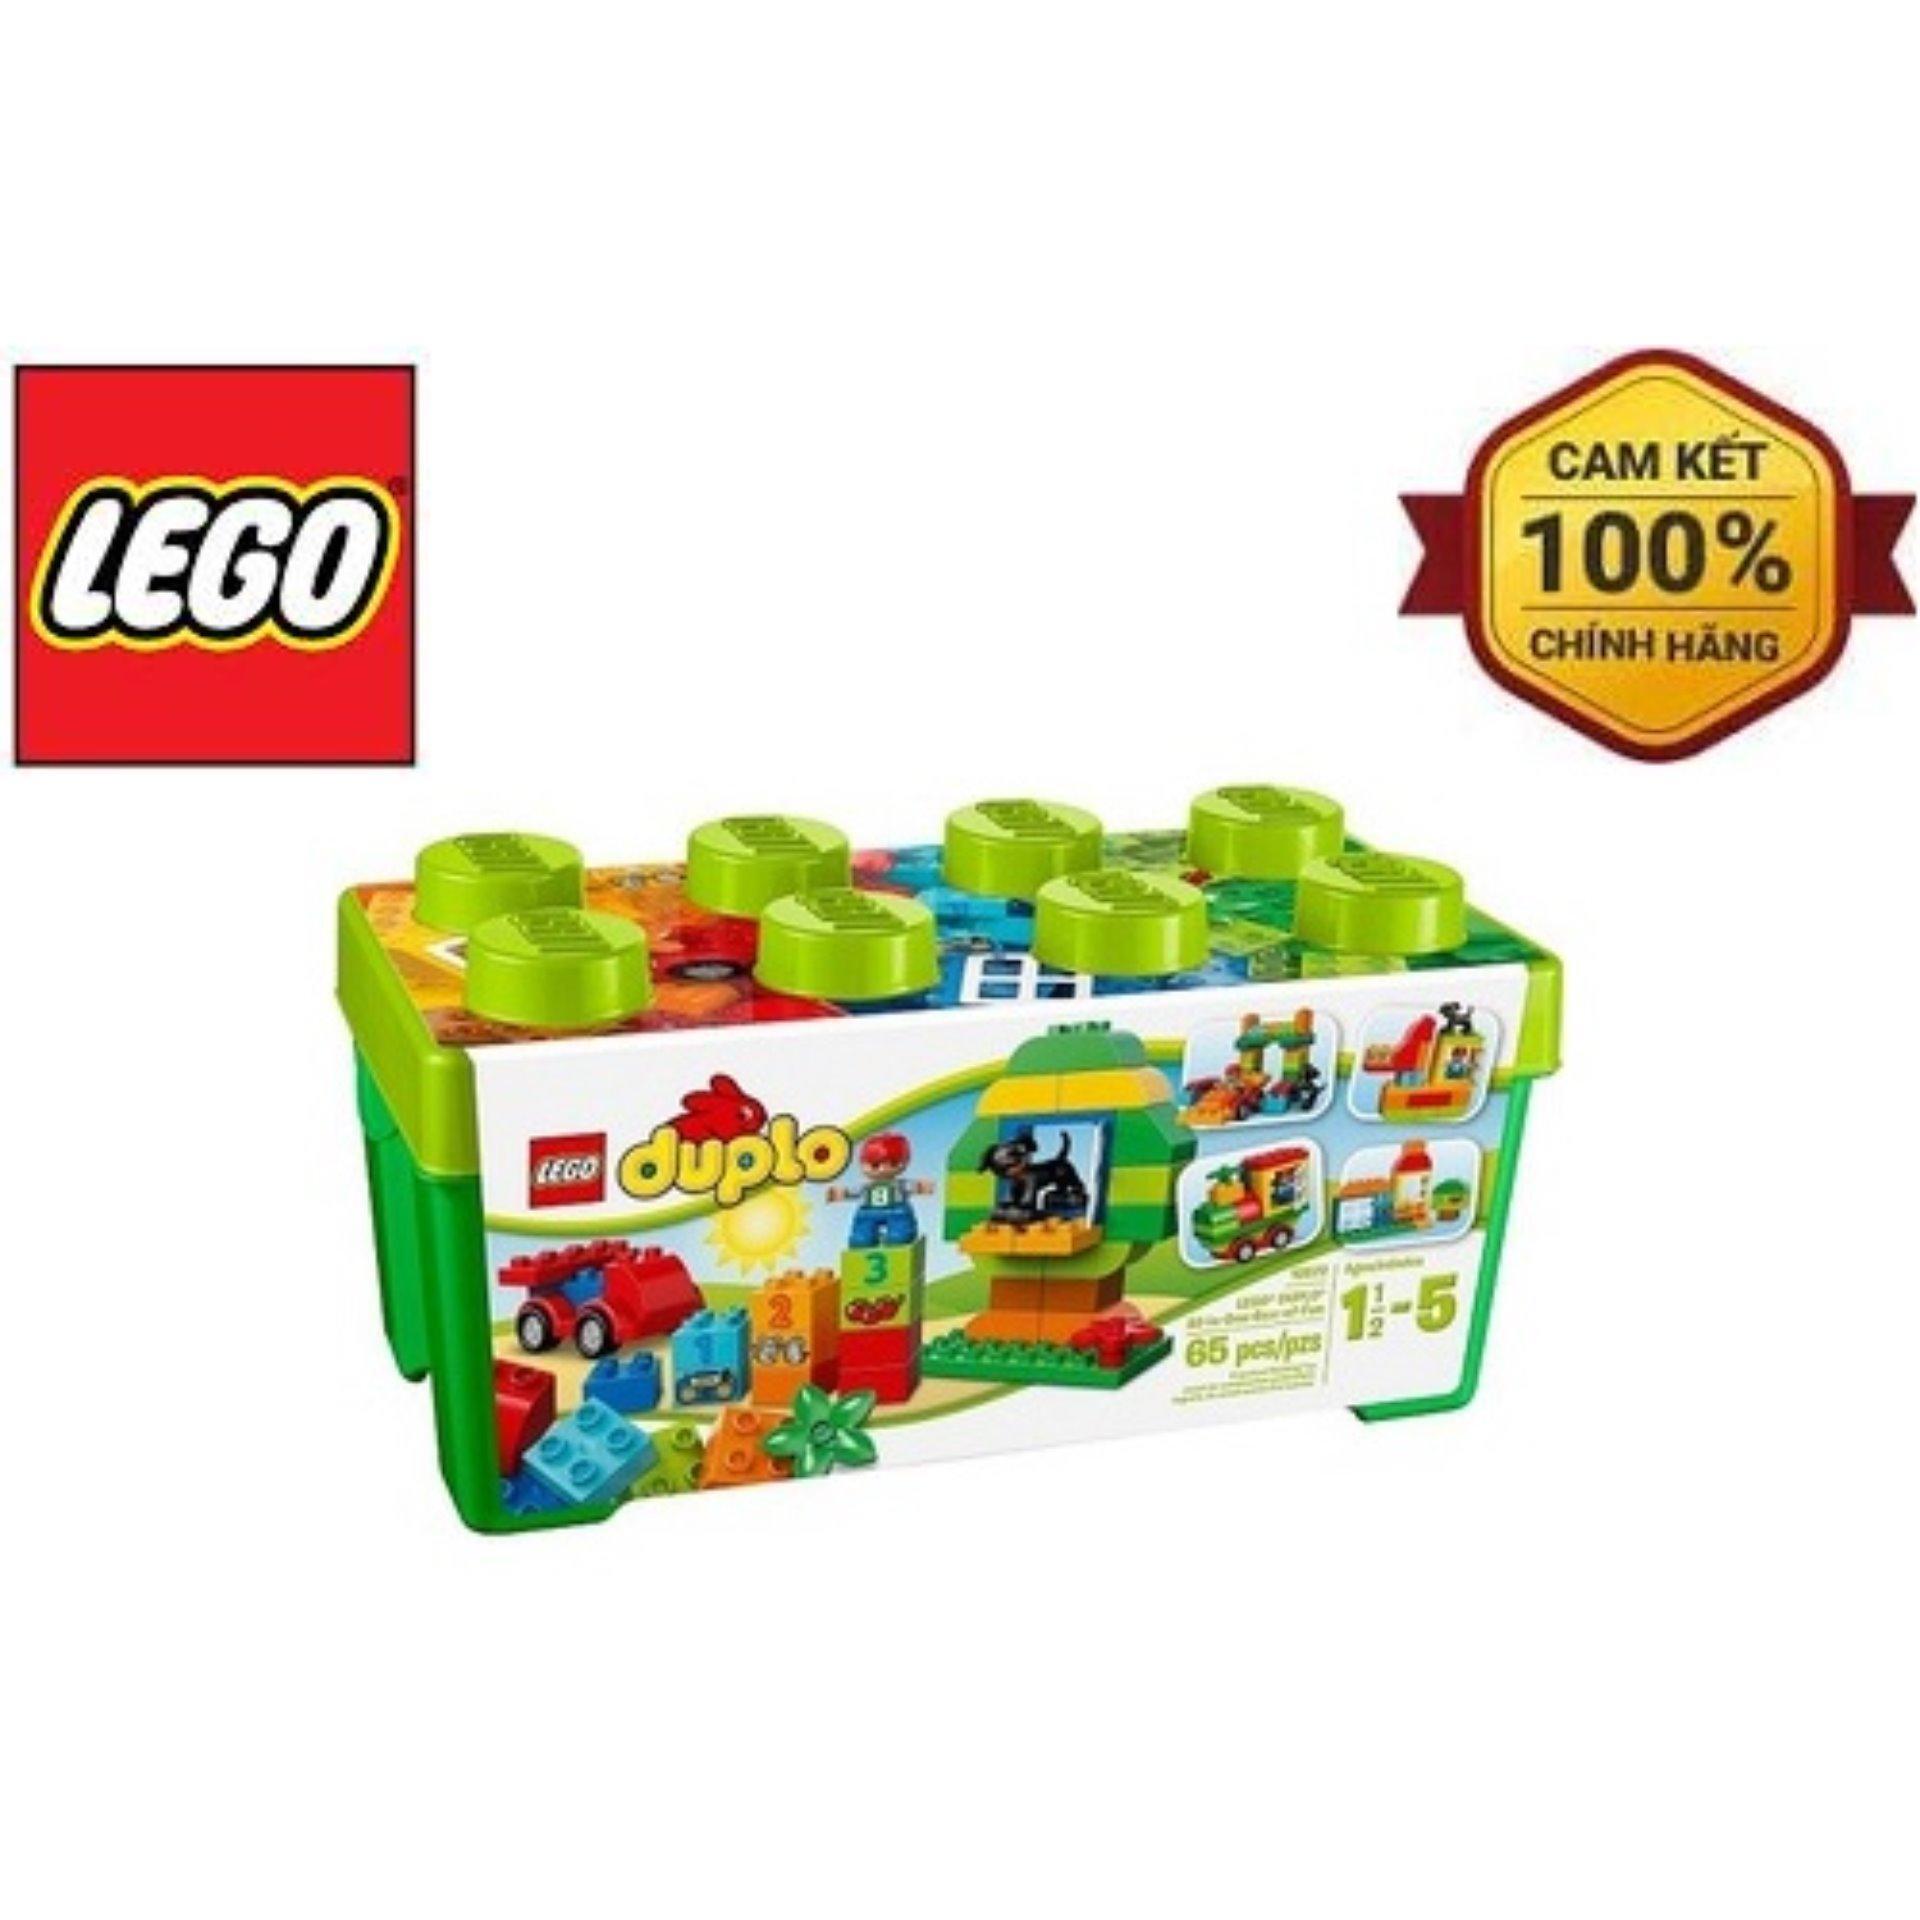 Đồ chơi Lego Duplo 10572 - Nhà của Tom